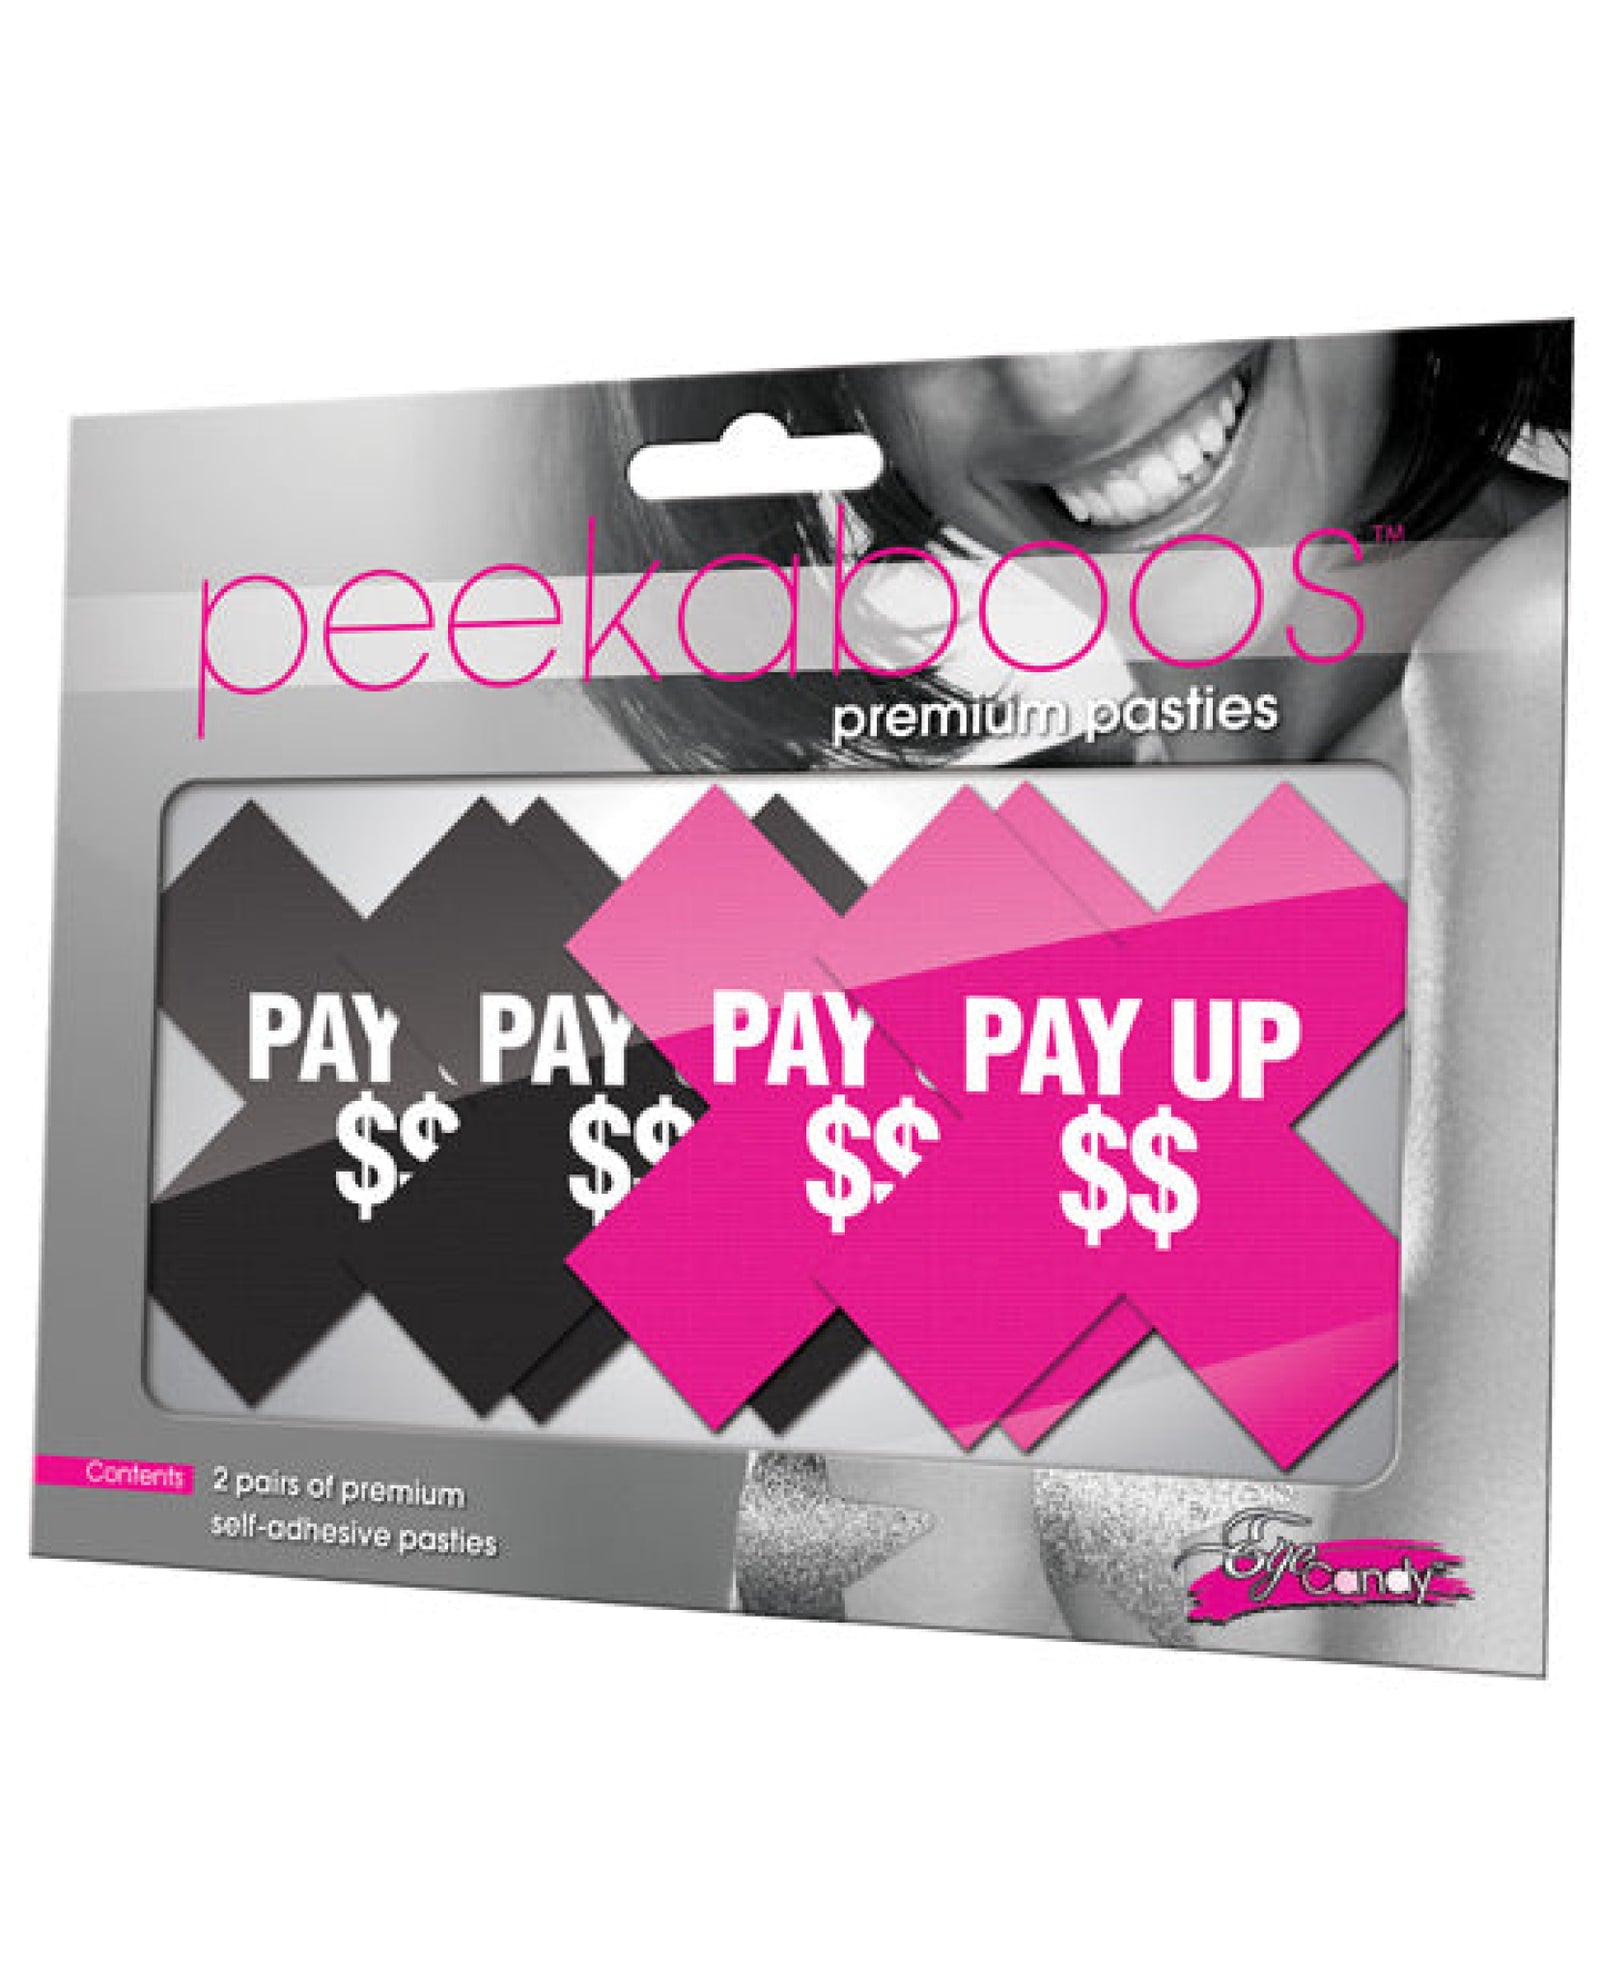 Peekaboos Pay Up Pasties - 2 Pairs 1 Black-1 Pink Xgen